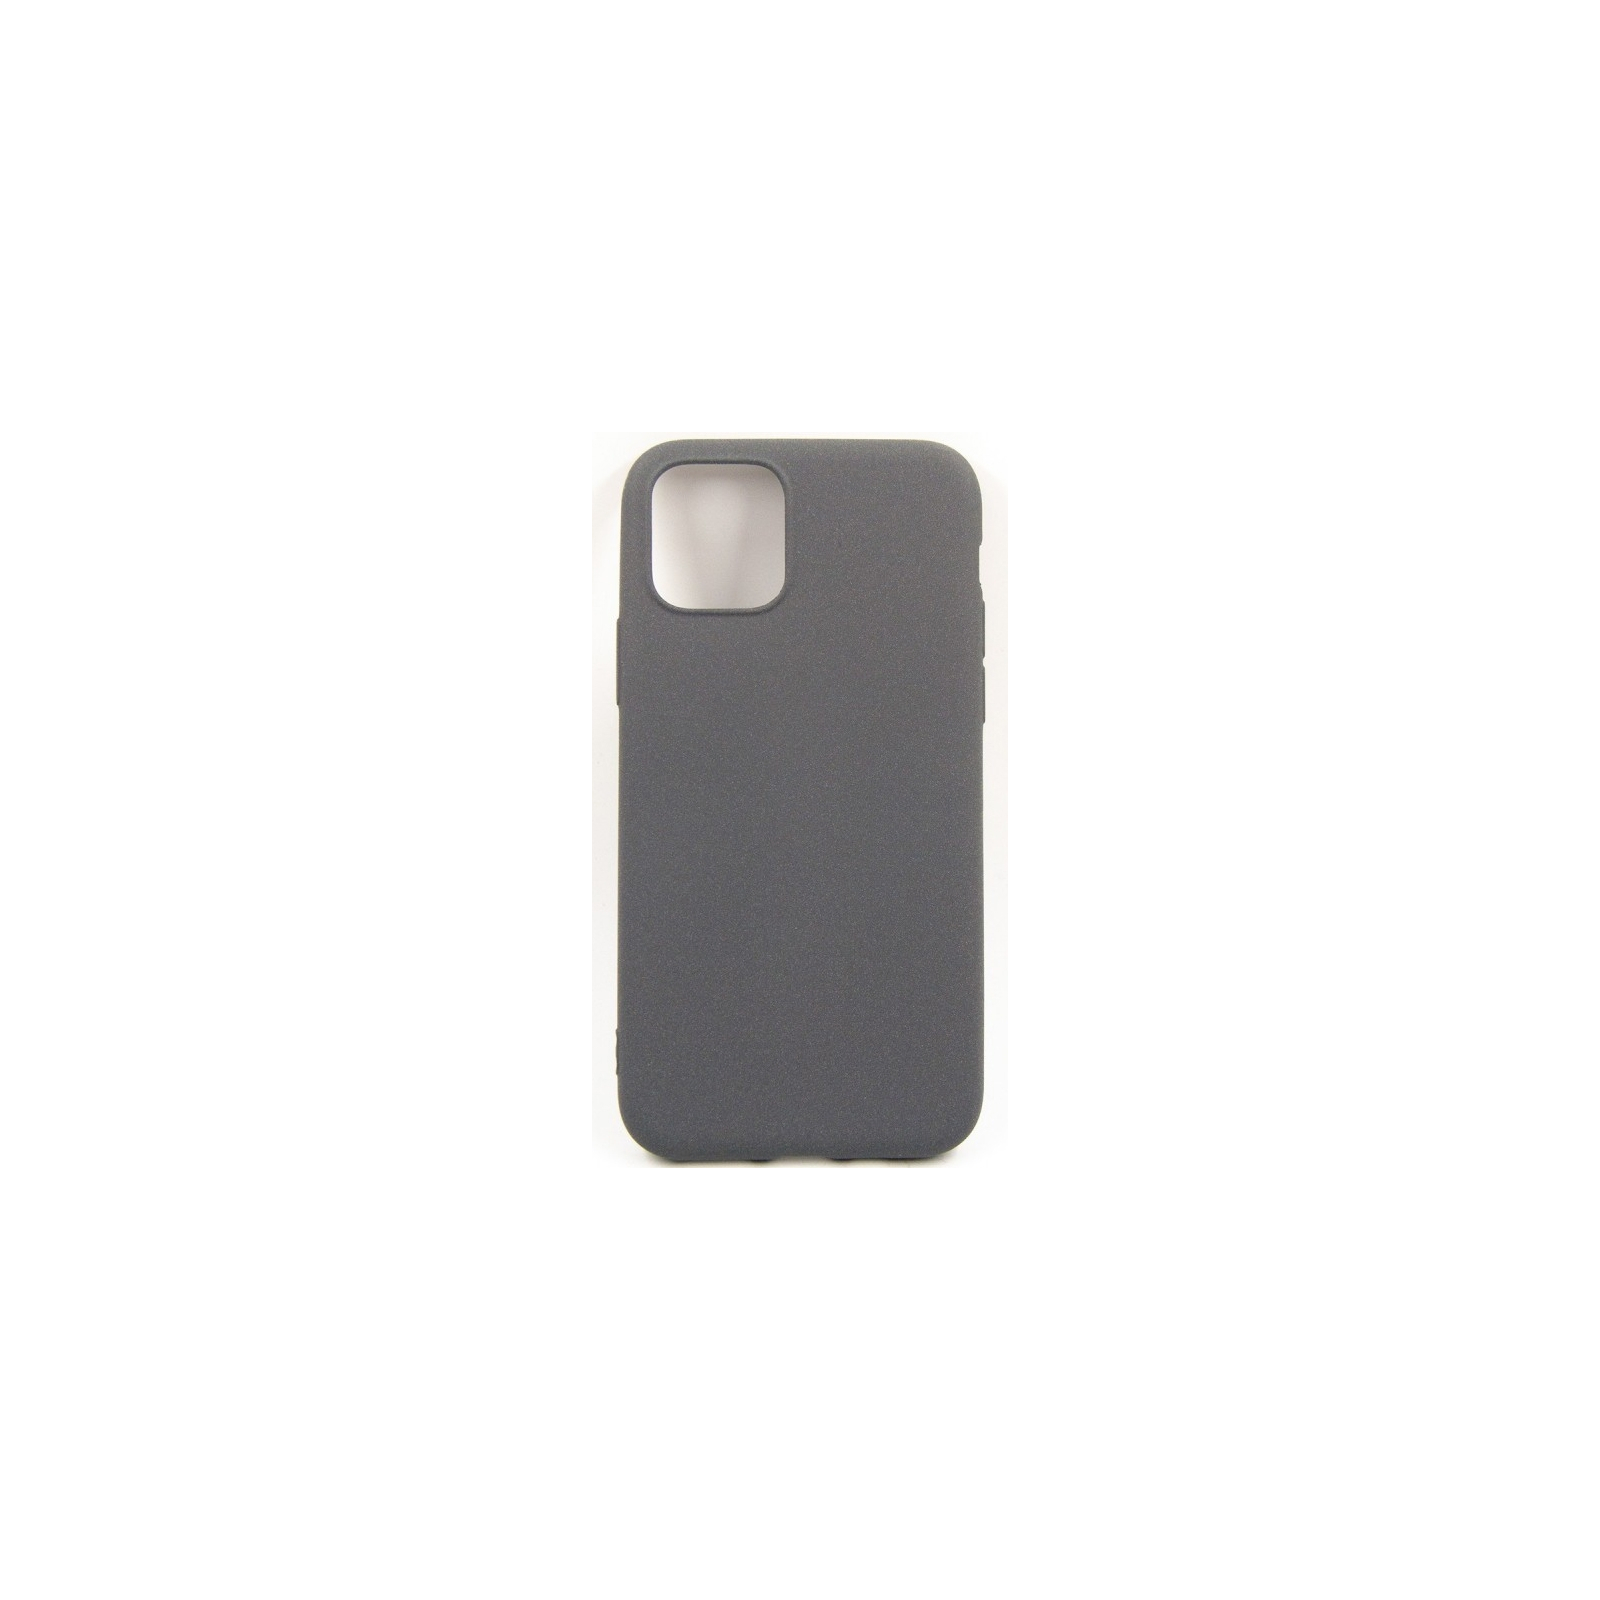 Чехол для мобильного телефона Dengos Carbon iPhone 11, black (DG-TPU-CRBN-34) (DG-TPU-CRBN-34)